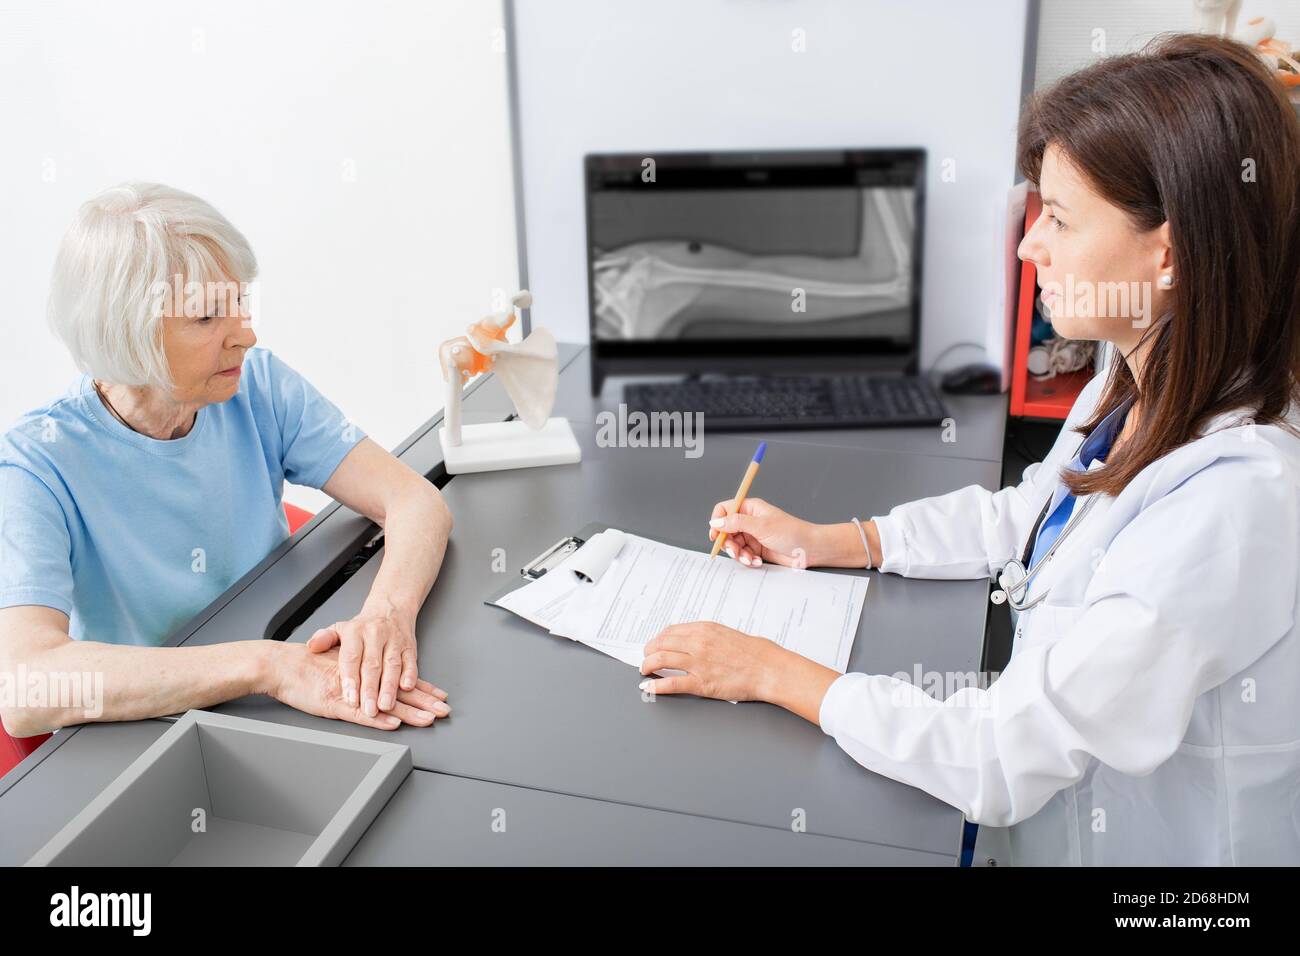 La donna anziana parla al medico osteopatico del dolore alle articolazioni e del tremore della mano. Diagnosi e trattamento dolore articolare nelle persone anziane Foto Stock